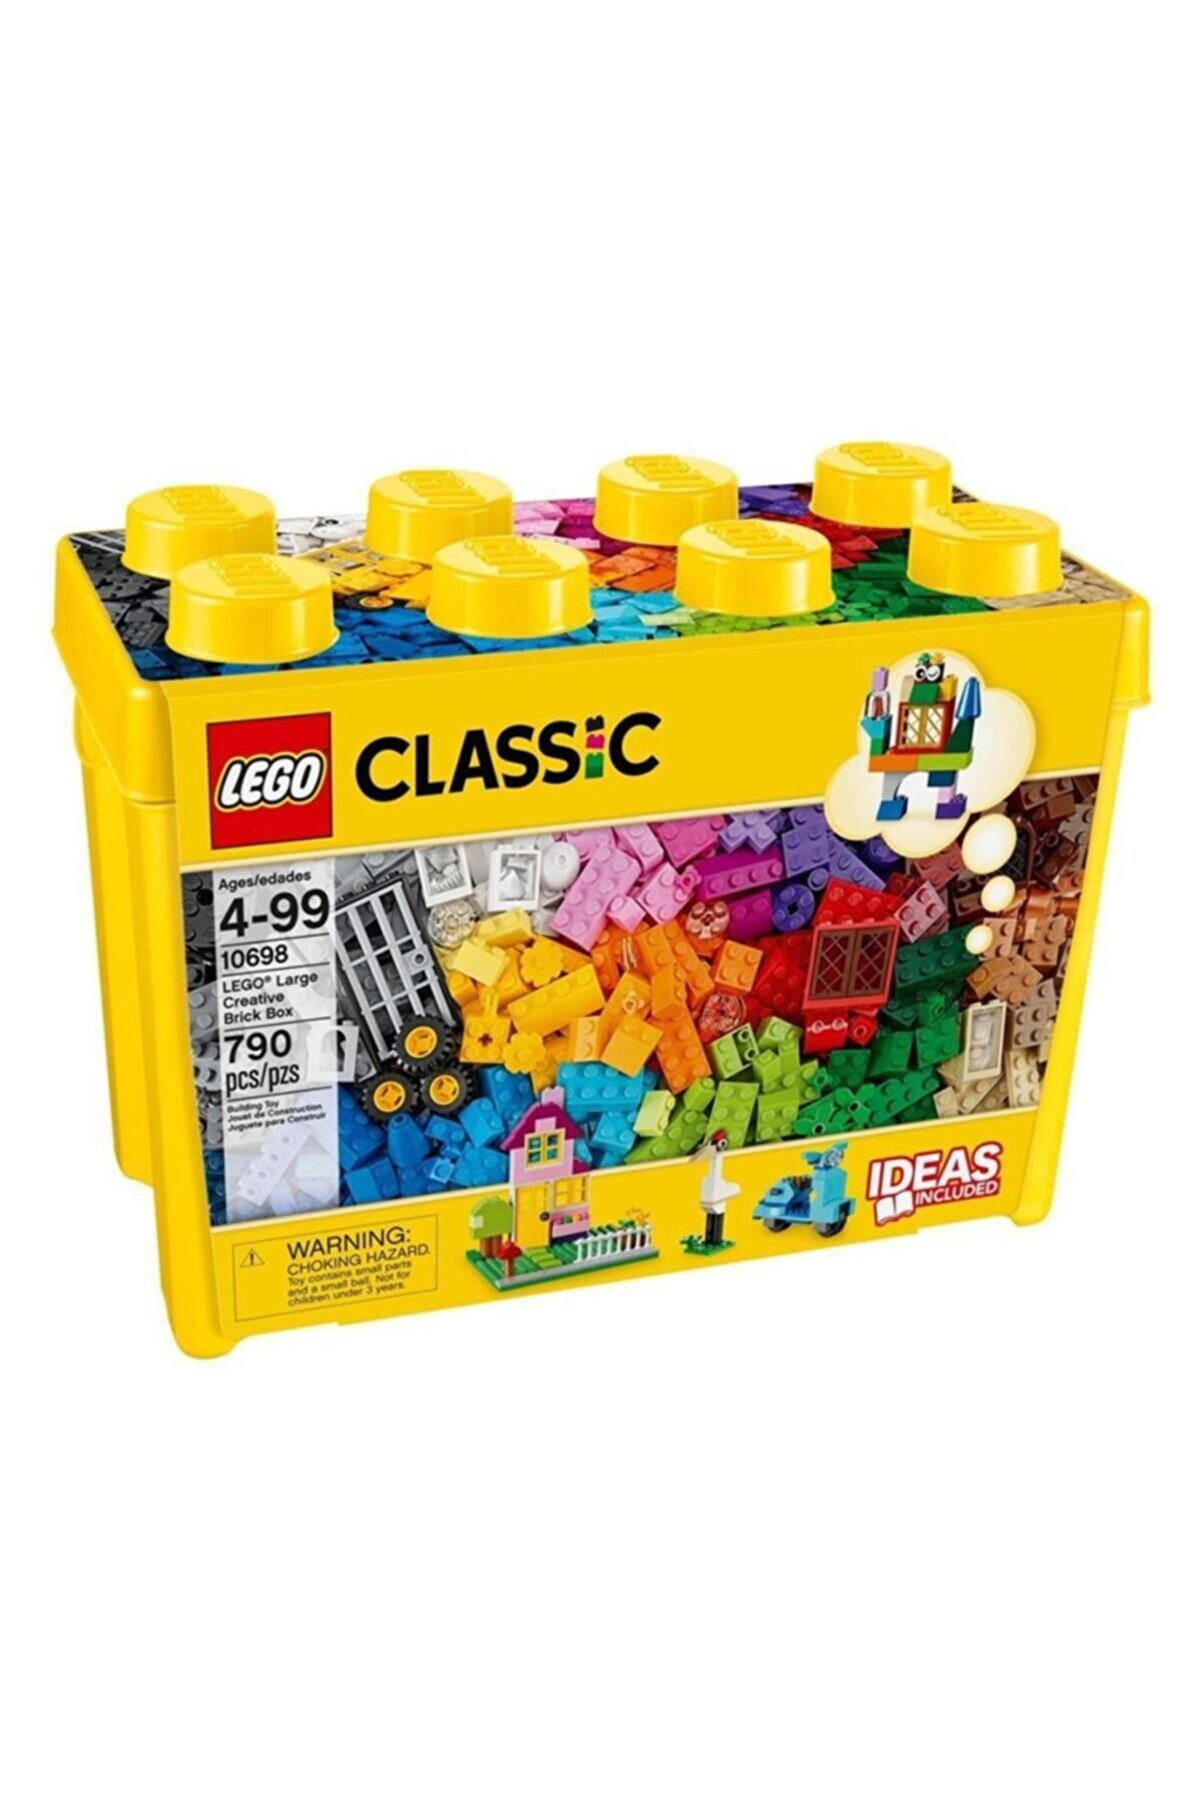 LEGO 10698 Classıc Büyük Boy Yaratıcı Yapım Seti 4-99 Yaş 790 Pcs